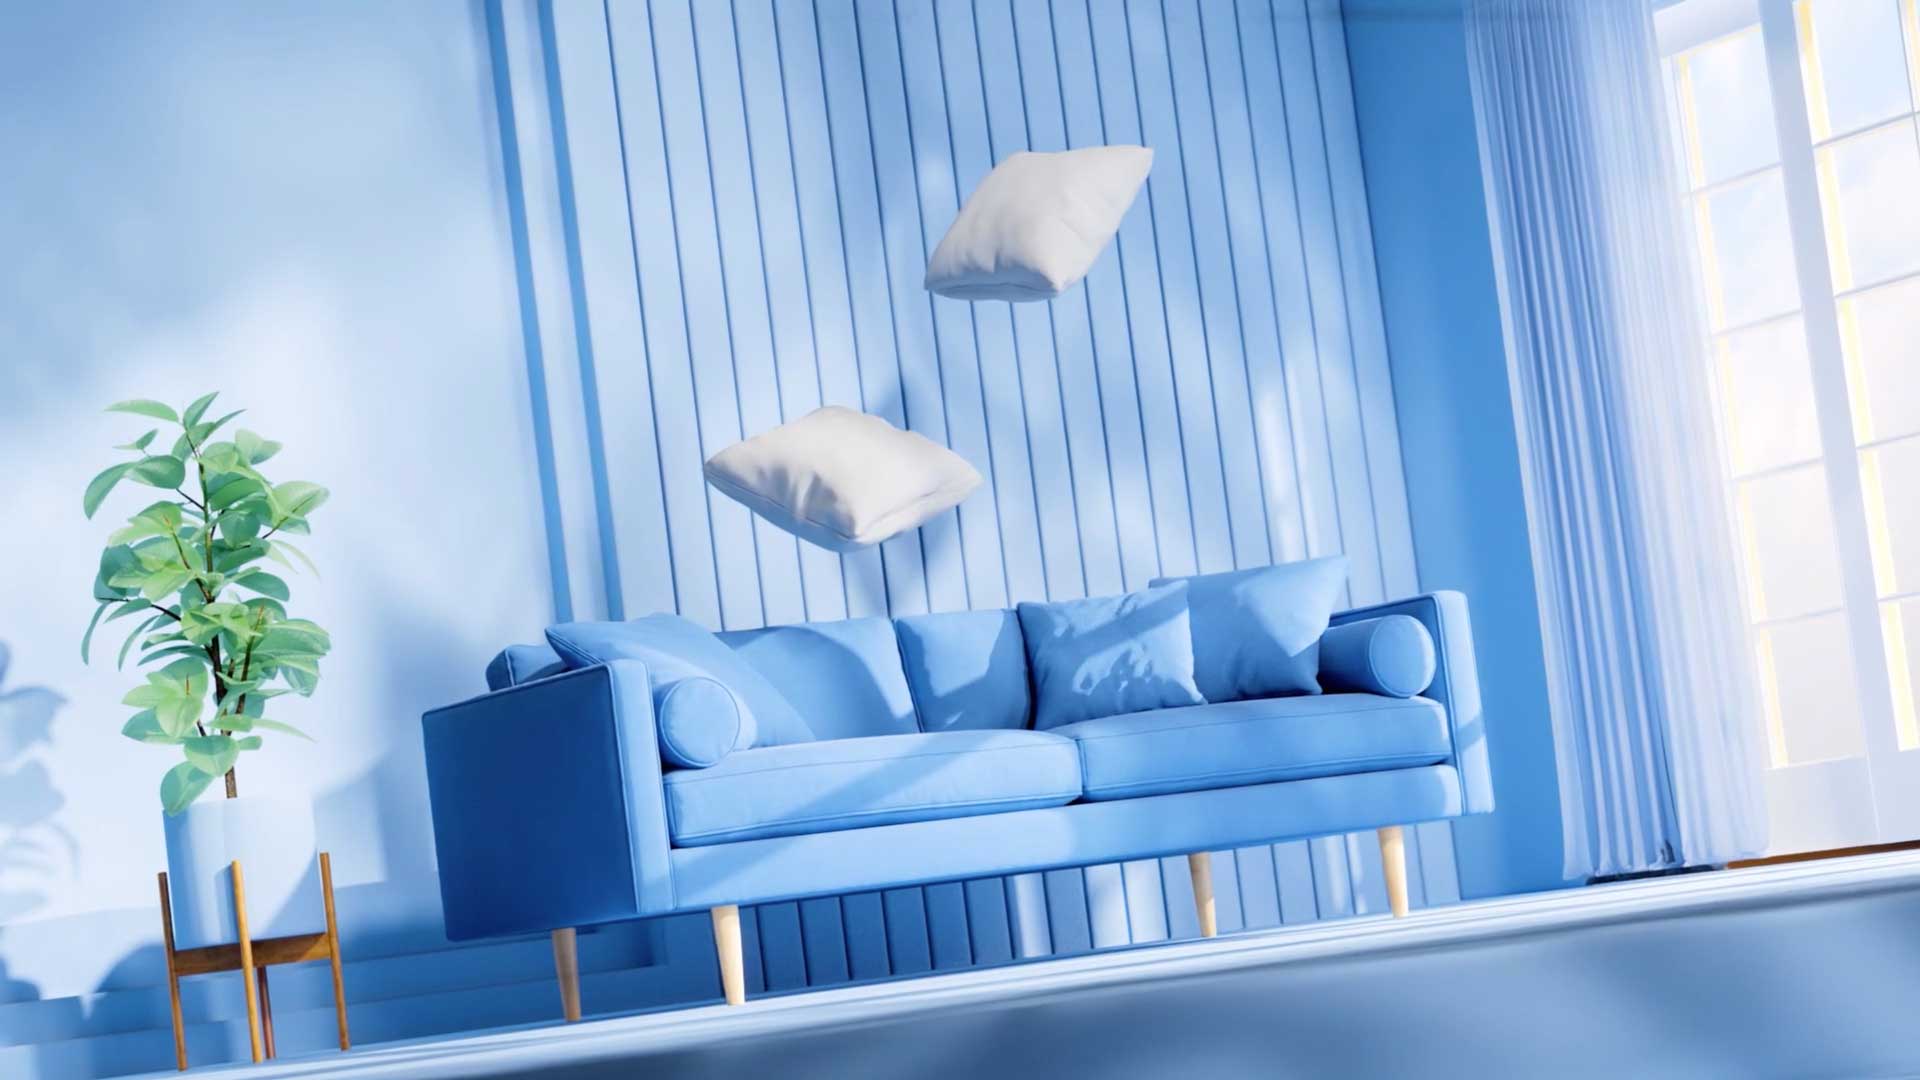 Dream Sofa The Journey by Revna Studio | STASH MAGAZINE